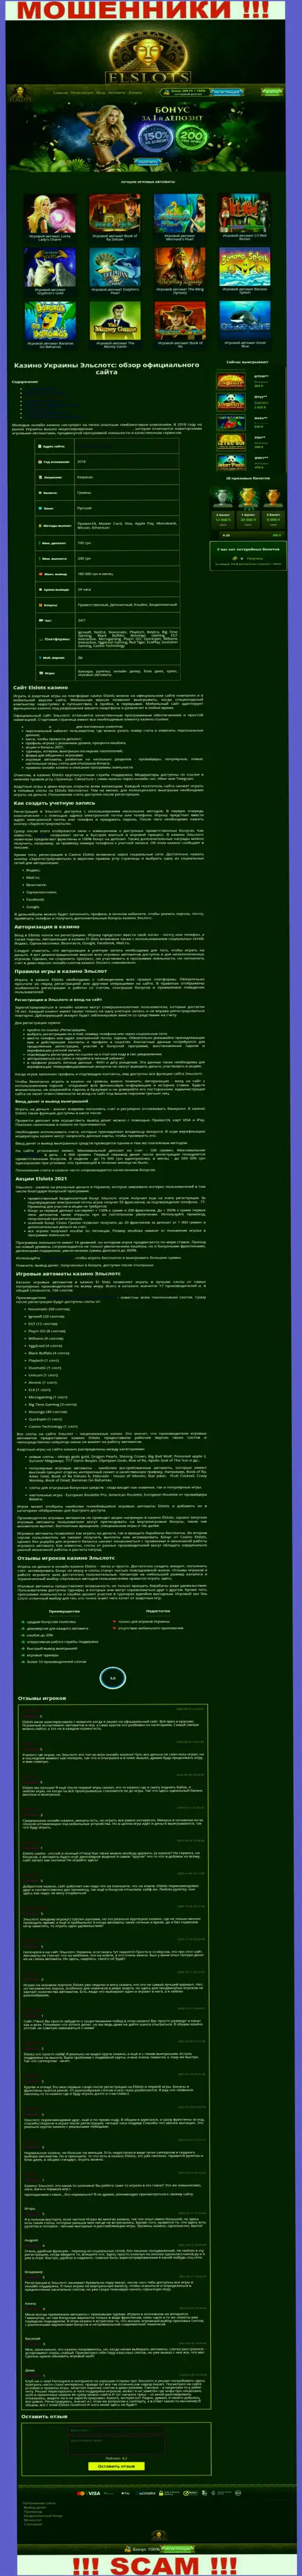 Внешний вид официальной web-страницы незаконно действующей организации ЕлСлотс